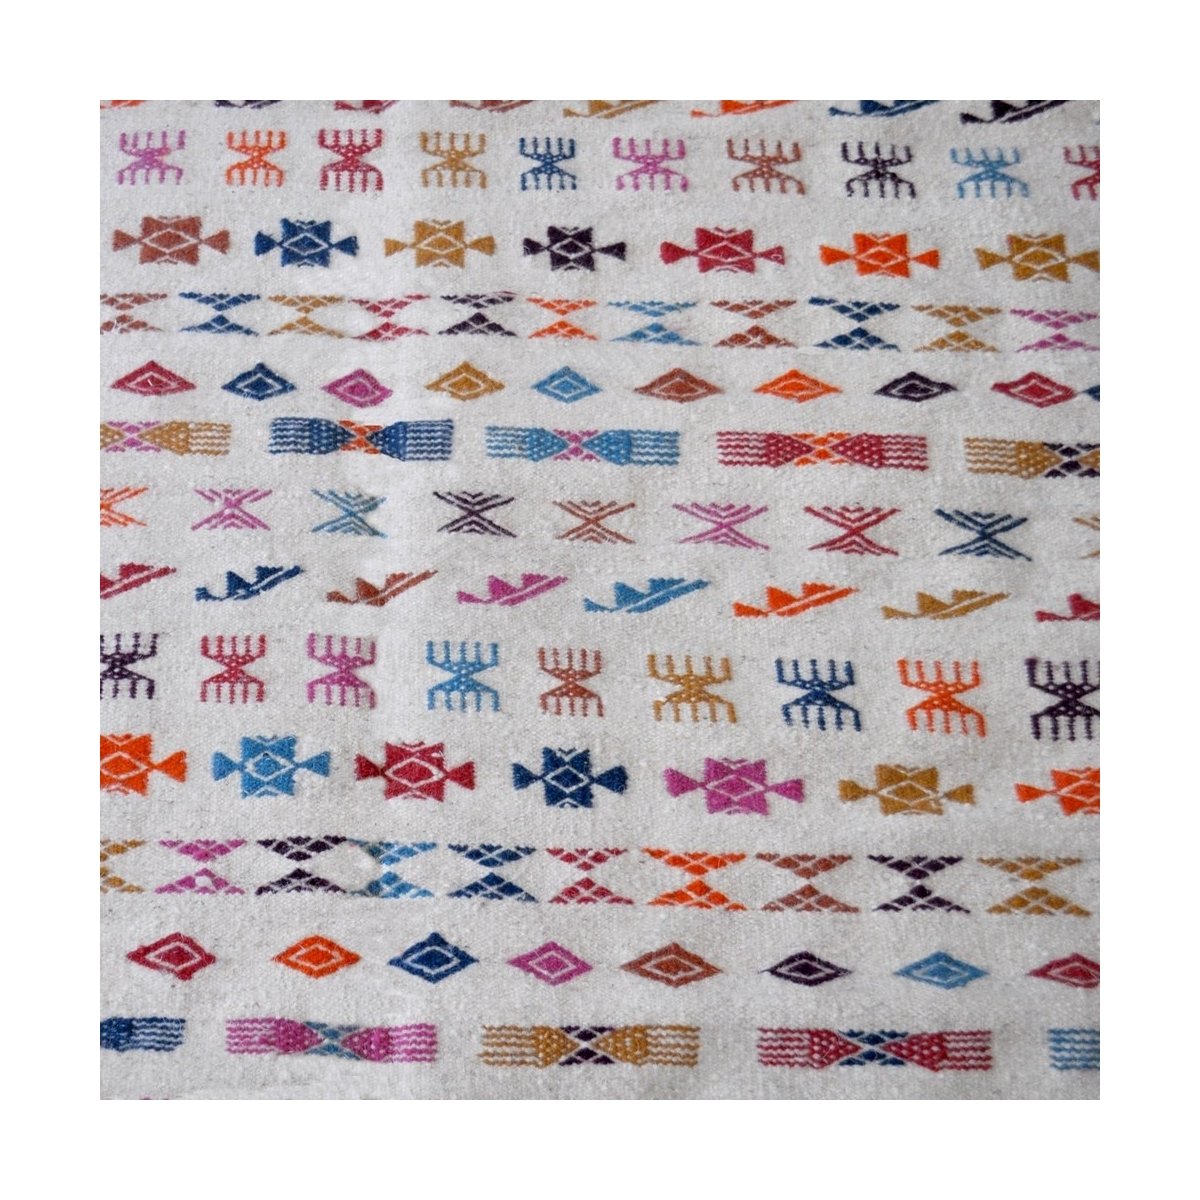 Berber tapijt Tapijt Kilim Salha 140x200 Wit/Veelkleurig (Handgeweven, Wol, Tunesië) Tunesisch Kilim Tapijt uit de stad Kairouan